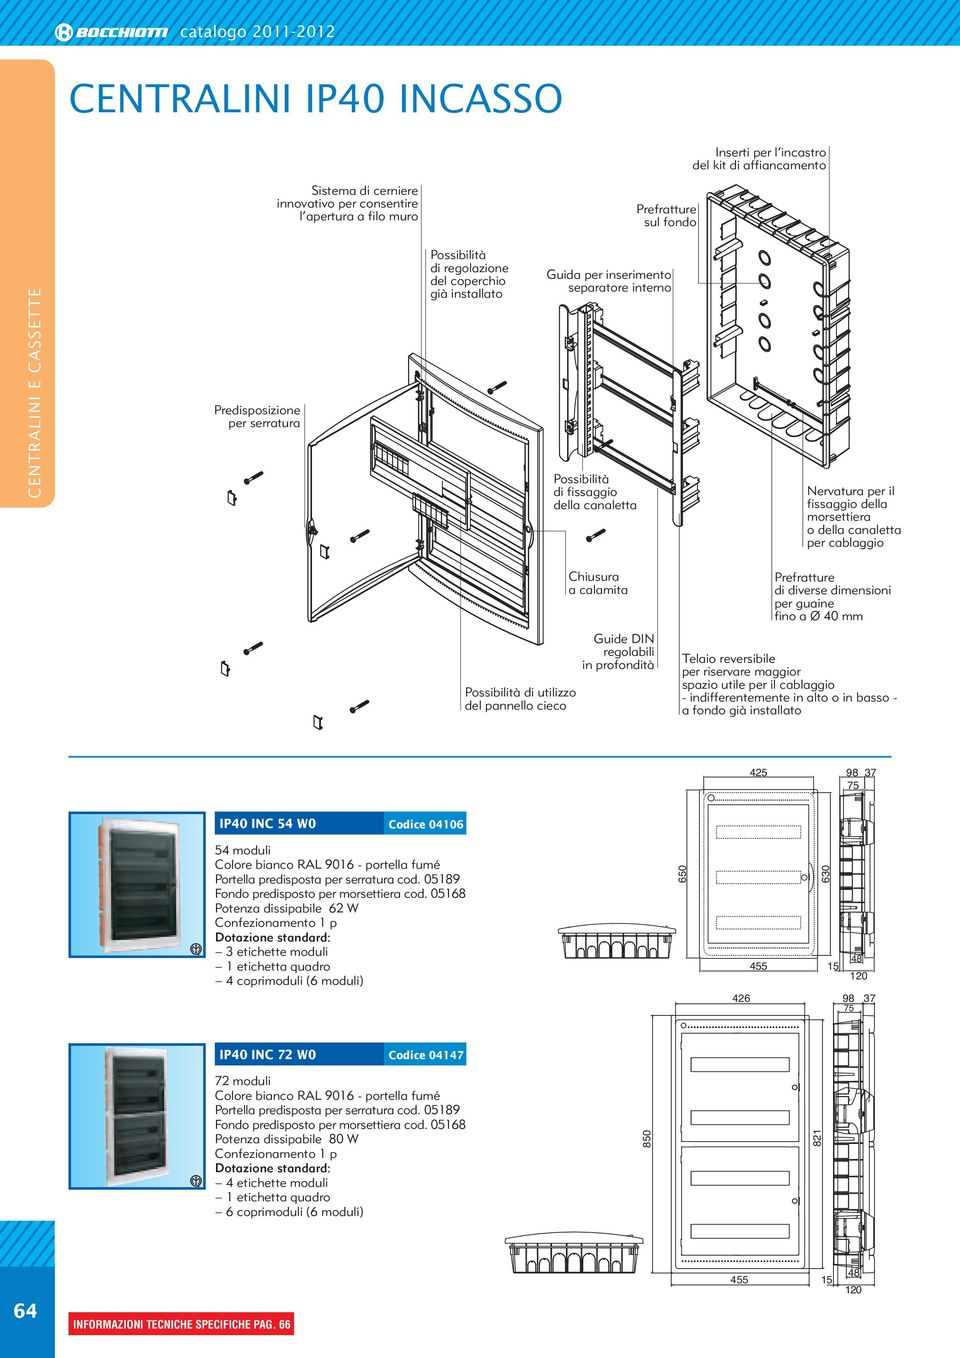 calamita Guide DIN regolabili in profondità di diverse dimensioni per guaine fino a Ø 40 mm Telaio reversibile per riservare maggior spazio utile per il cablaggio - indifferentemente in alto o in